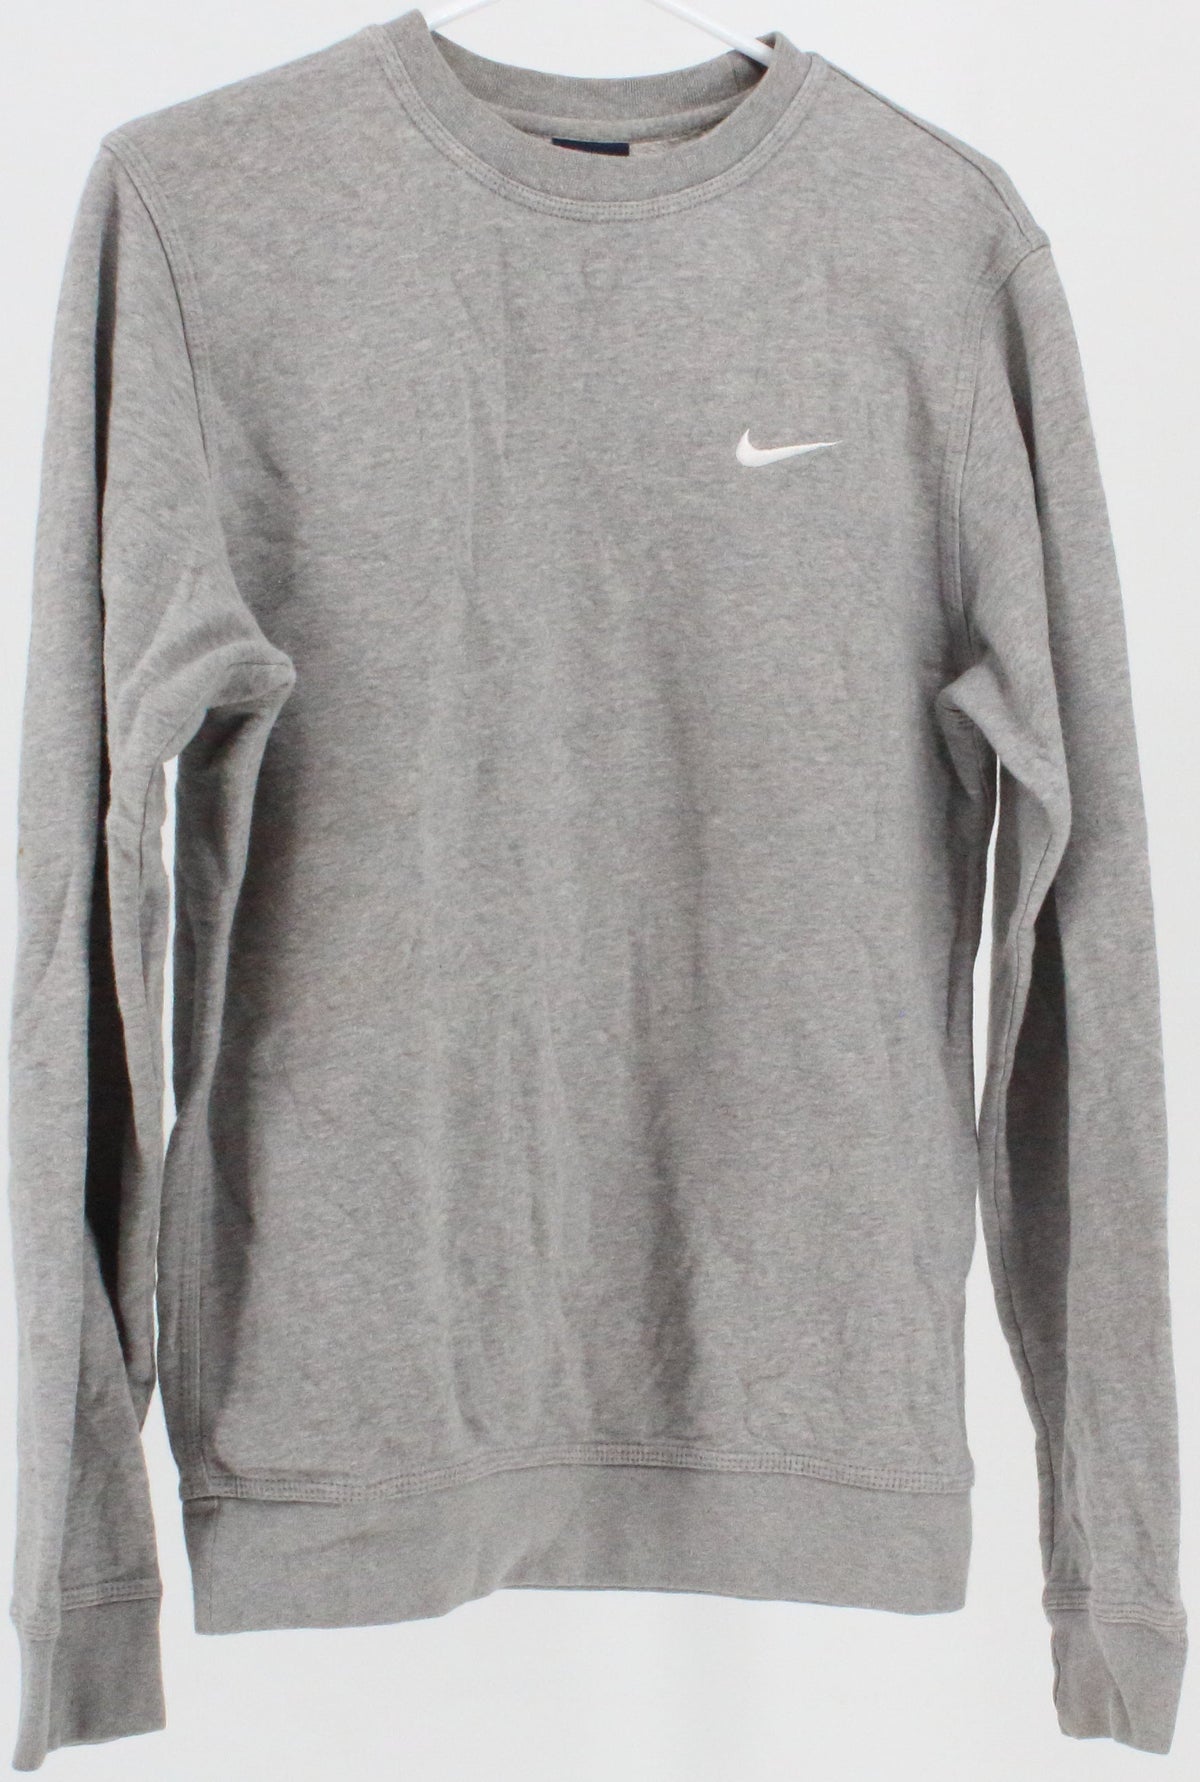 Nike Grey Basic Crewneck Sweatshirt